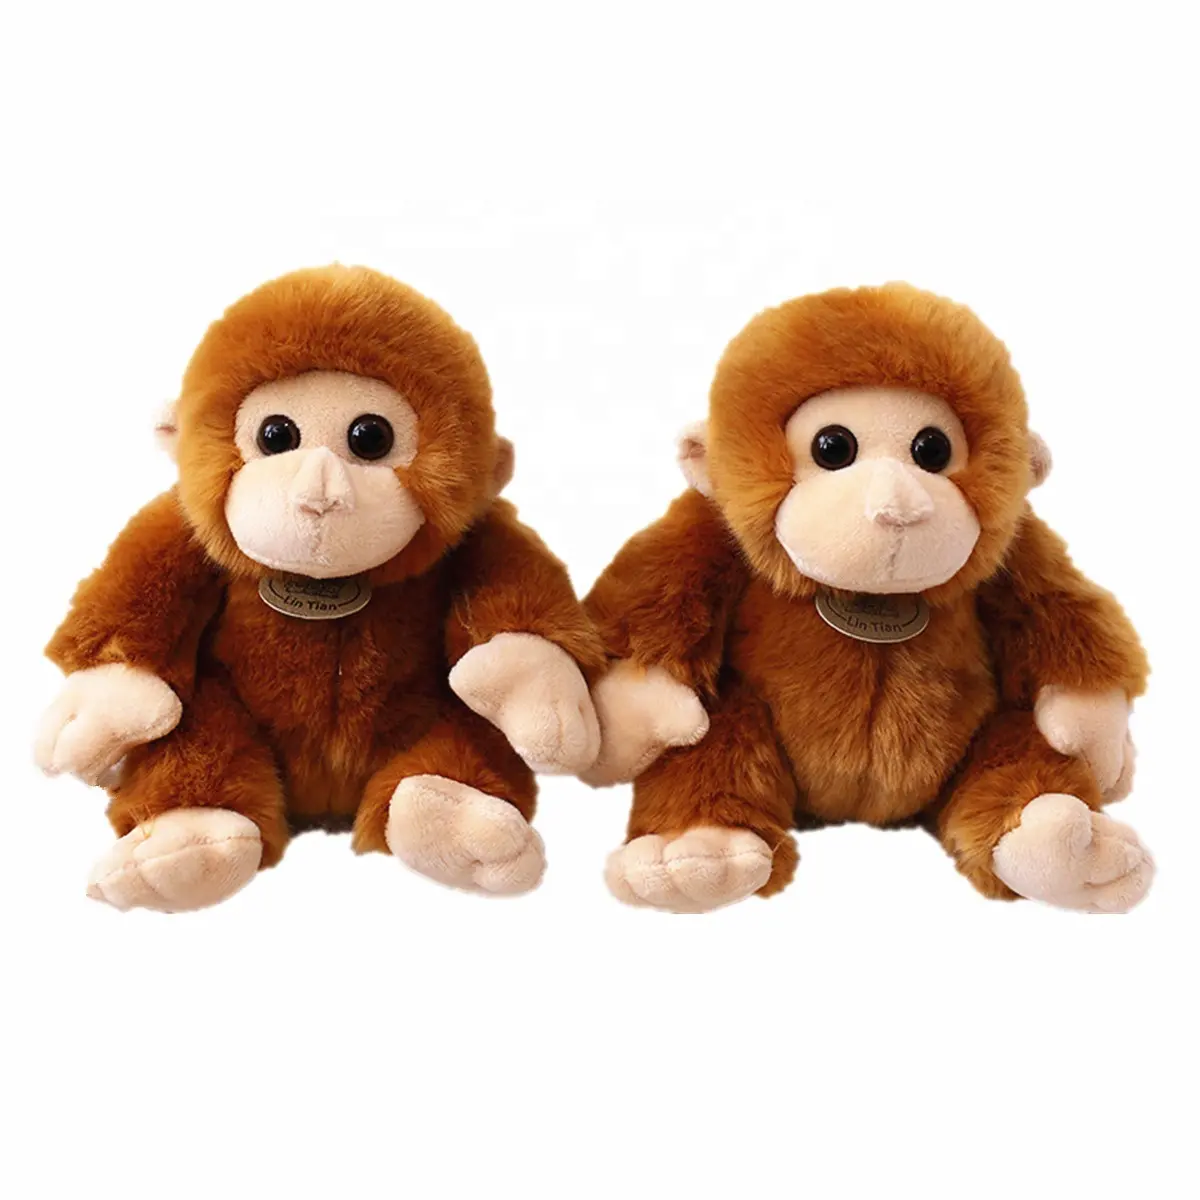 ตุ๊กตาลิงเหมือนจริง17 cm, ตุ๊กตาของเล่นตุ๊กตาลิงสีน้ำตาลตาใหญ่ออกแบบได้เองของขวัญสำหรับเด็ก